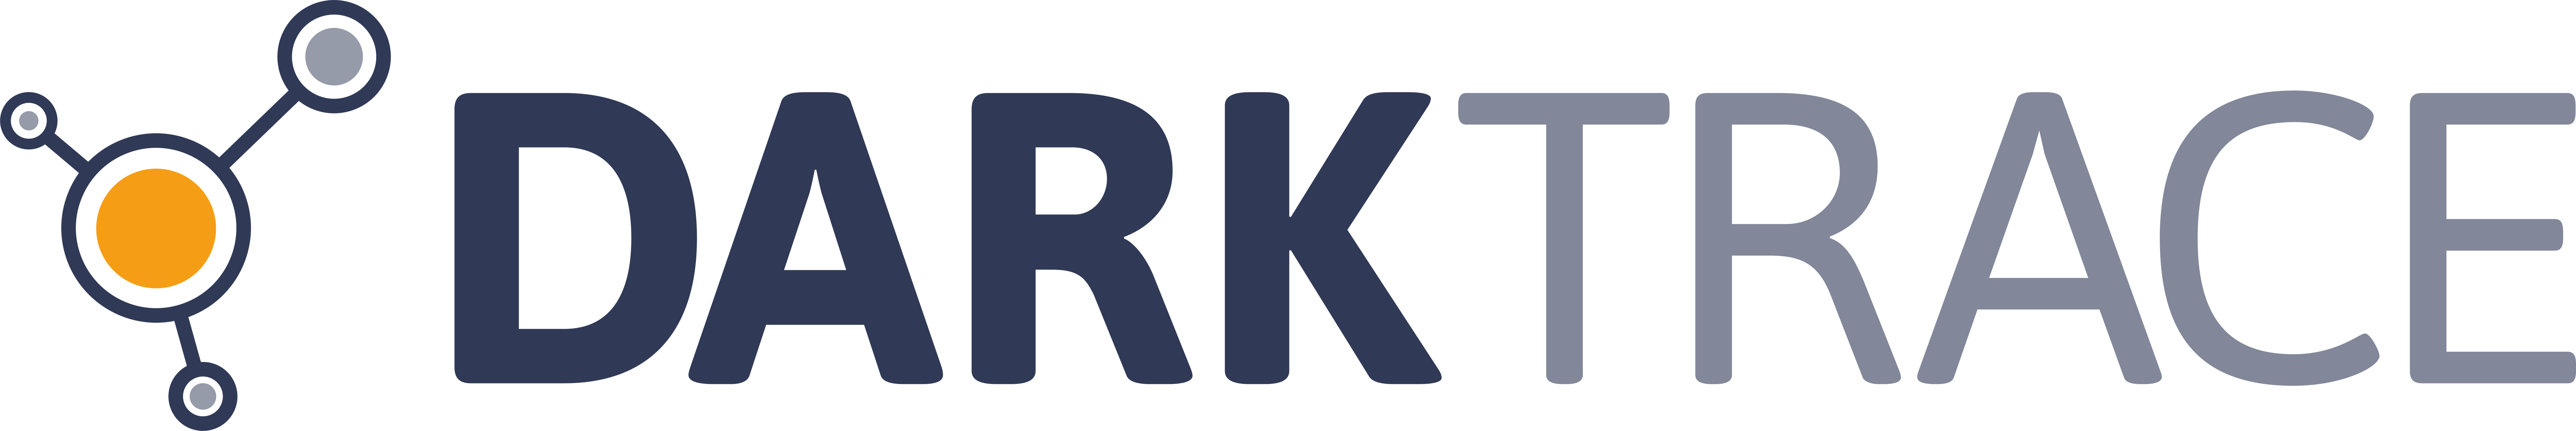 Darktrace_logo